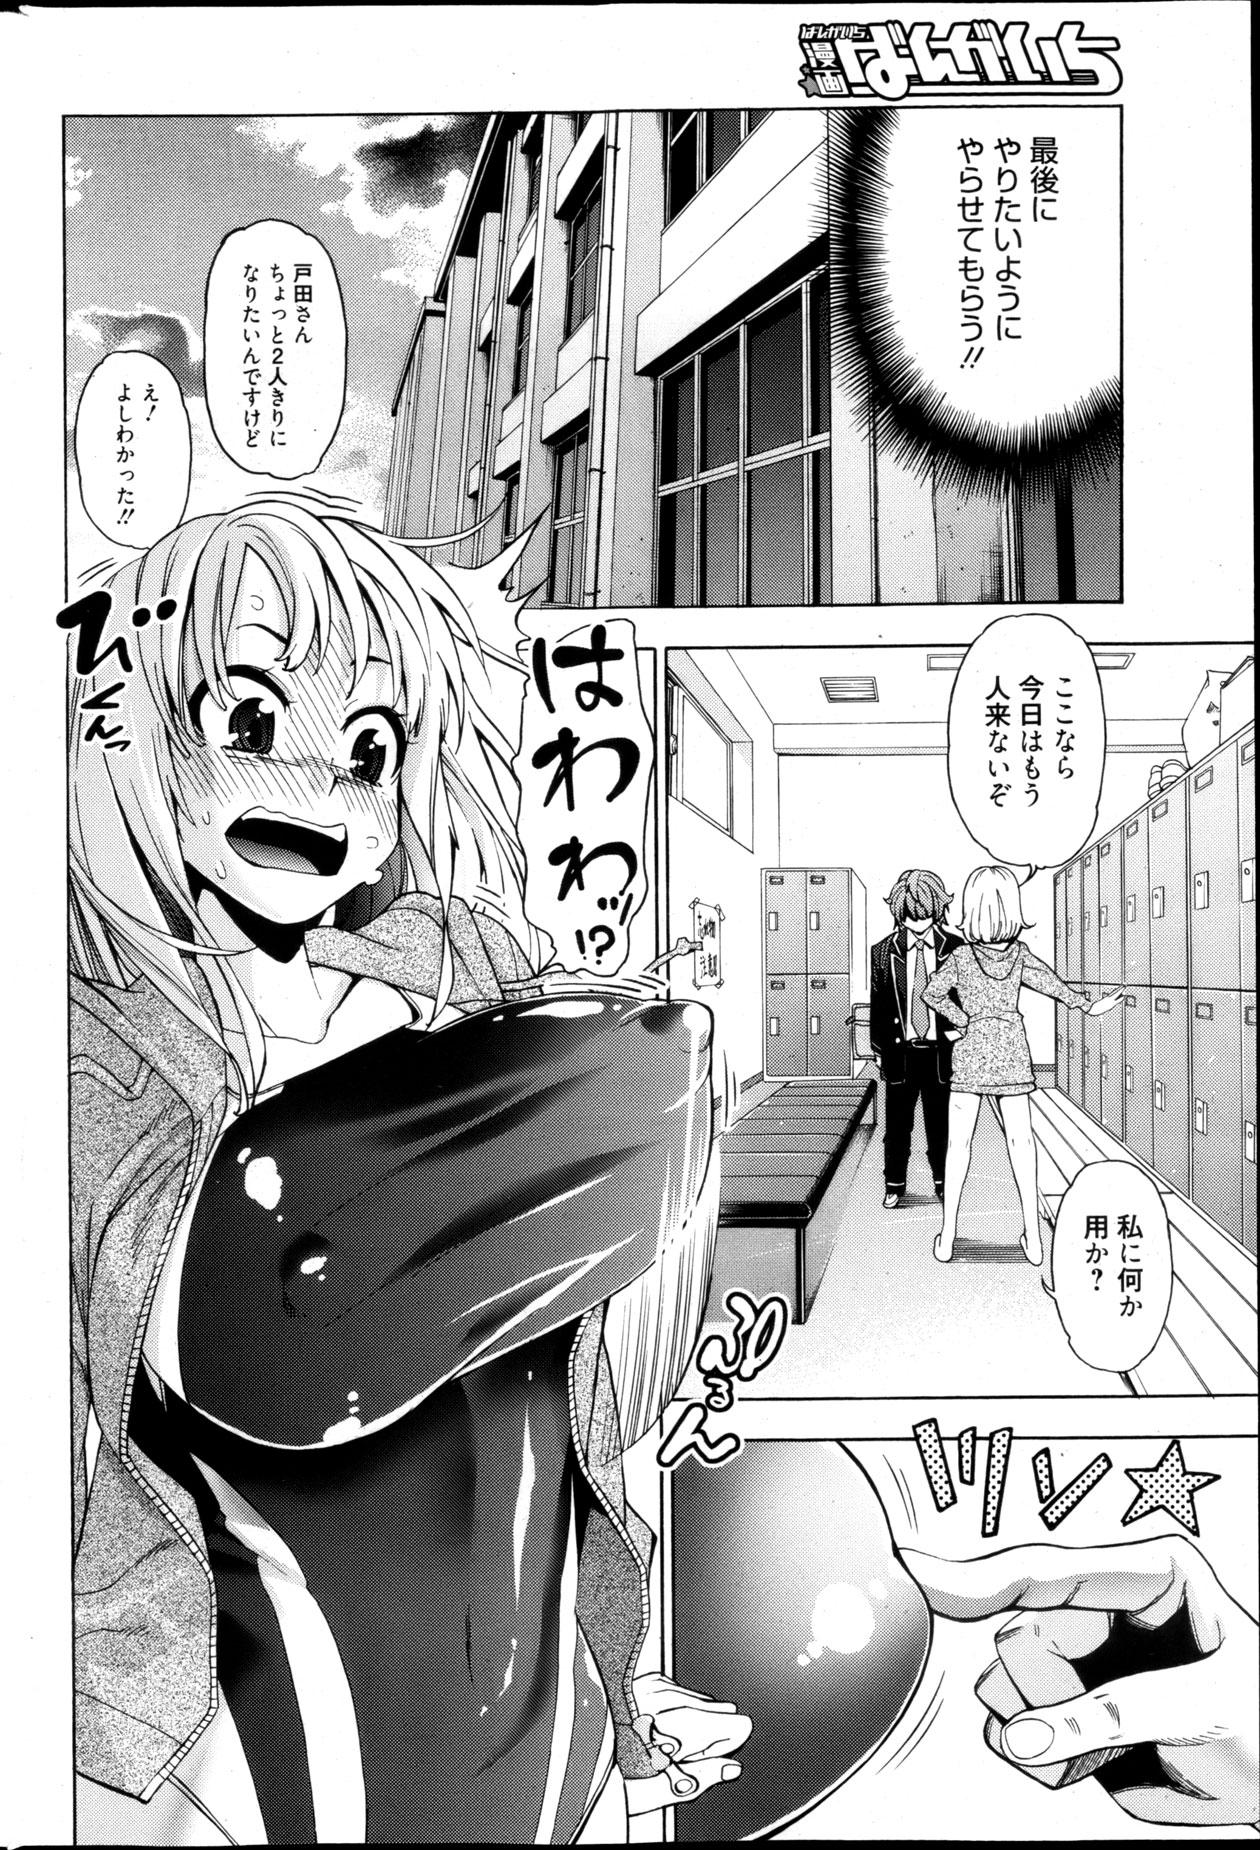 Manga Bangaichi 2013-05 漫画ばんがいち 2013年5月号